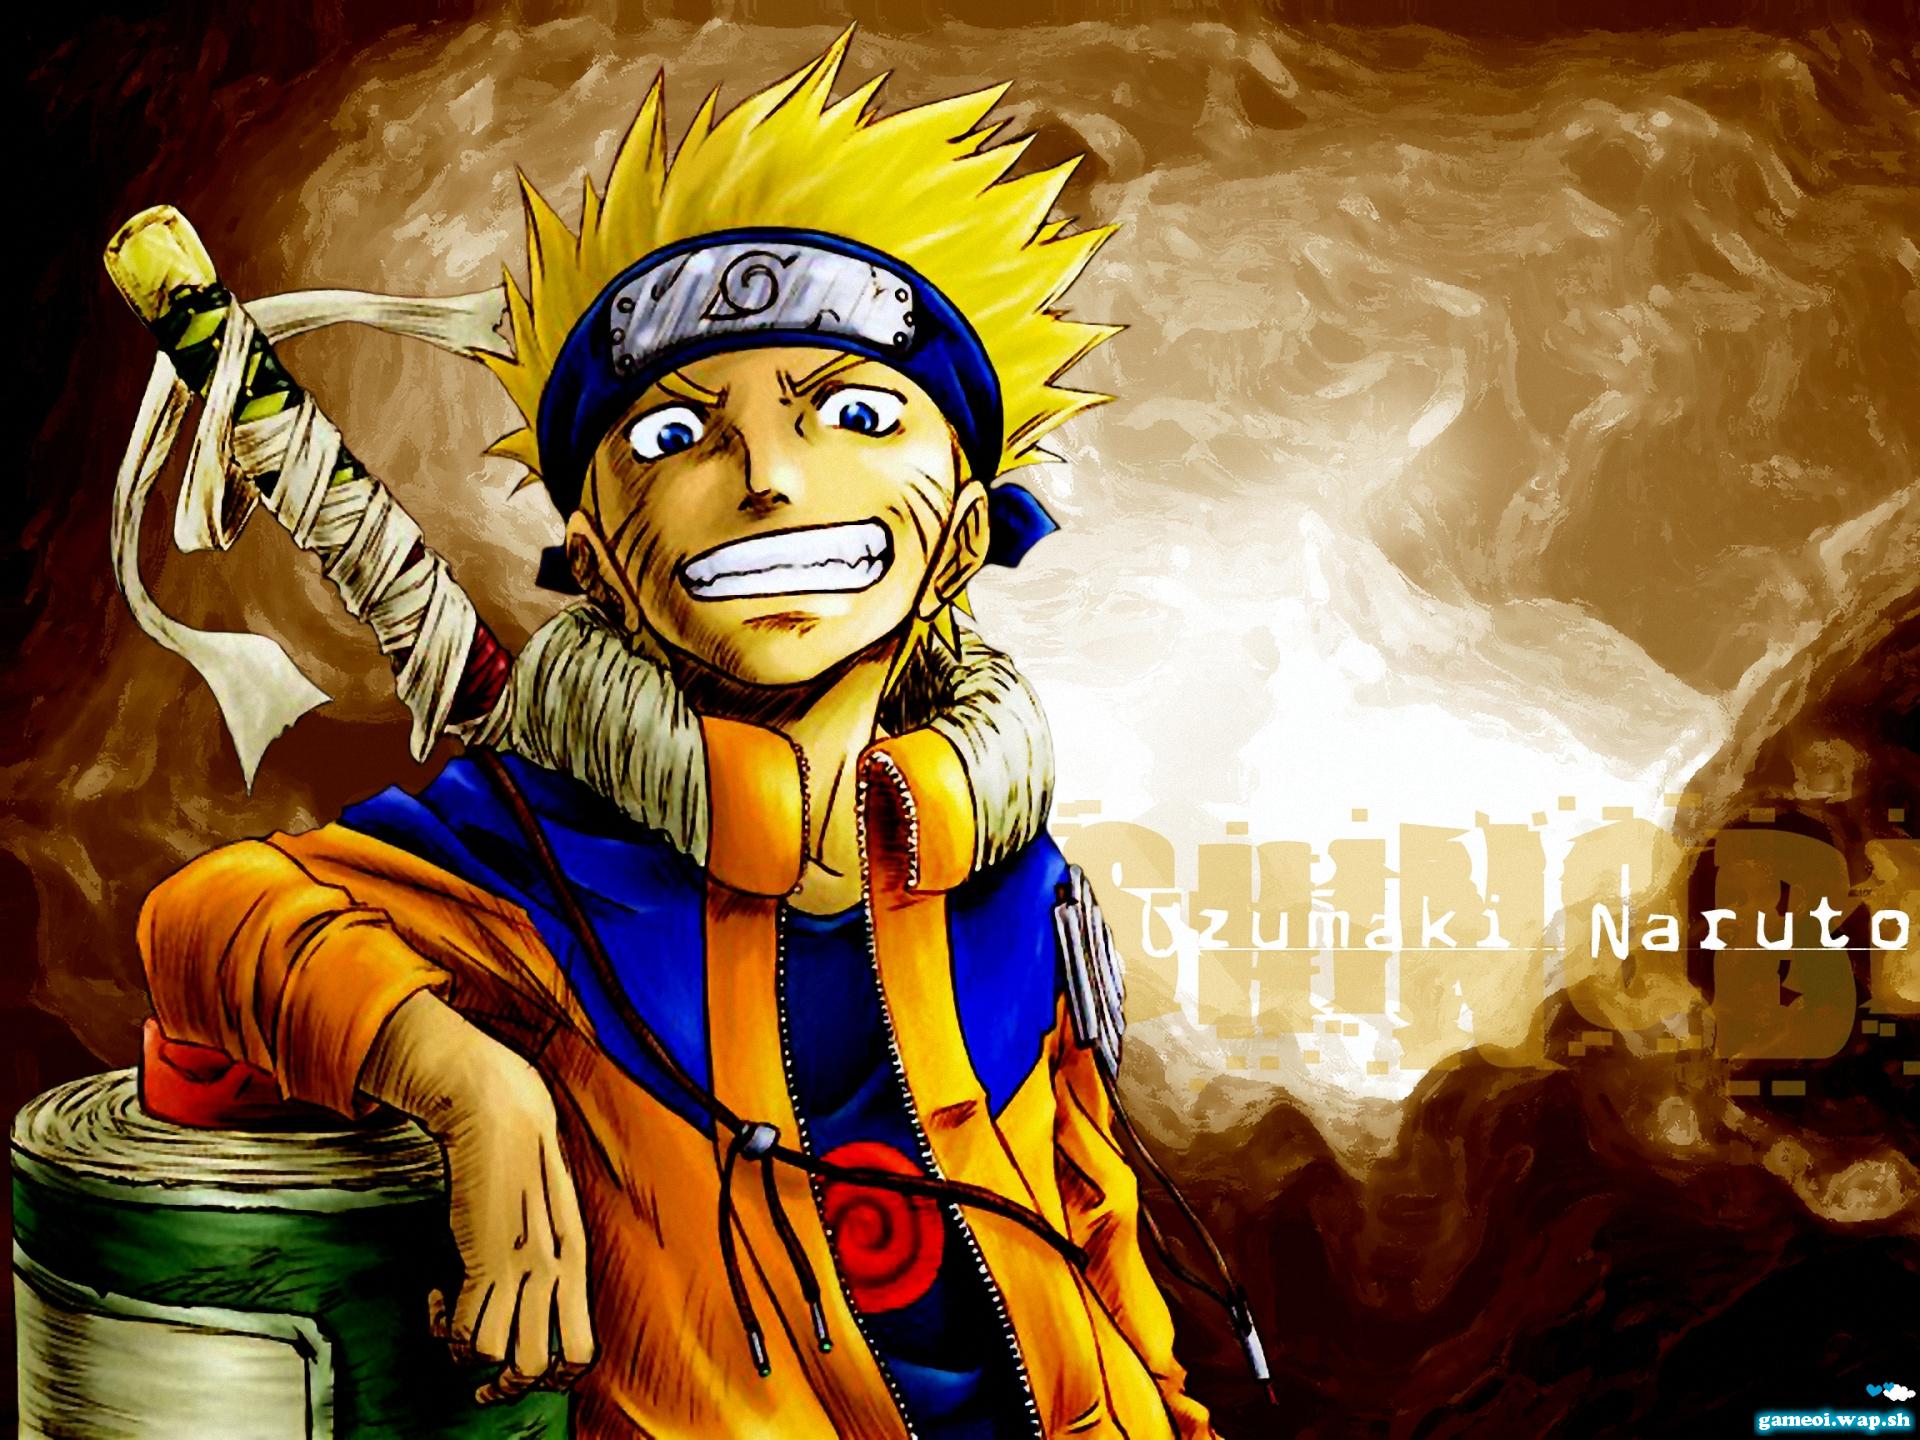 Hình ảnh Naruto cùng đồng đội Phần 2